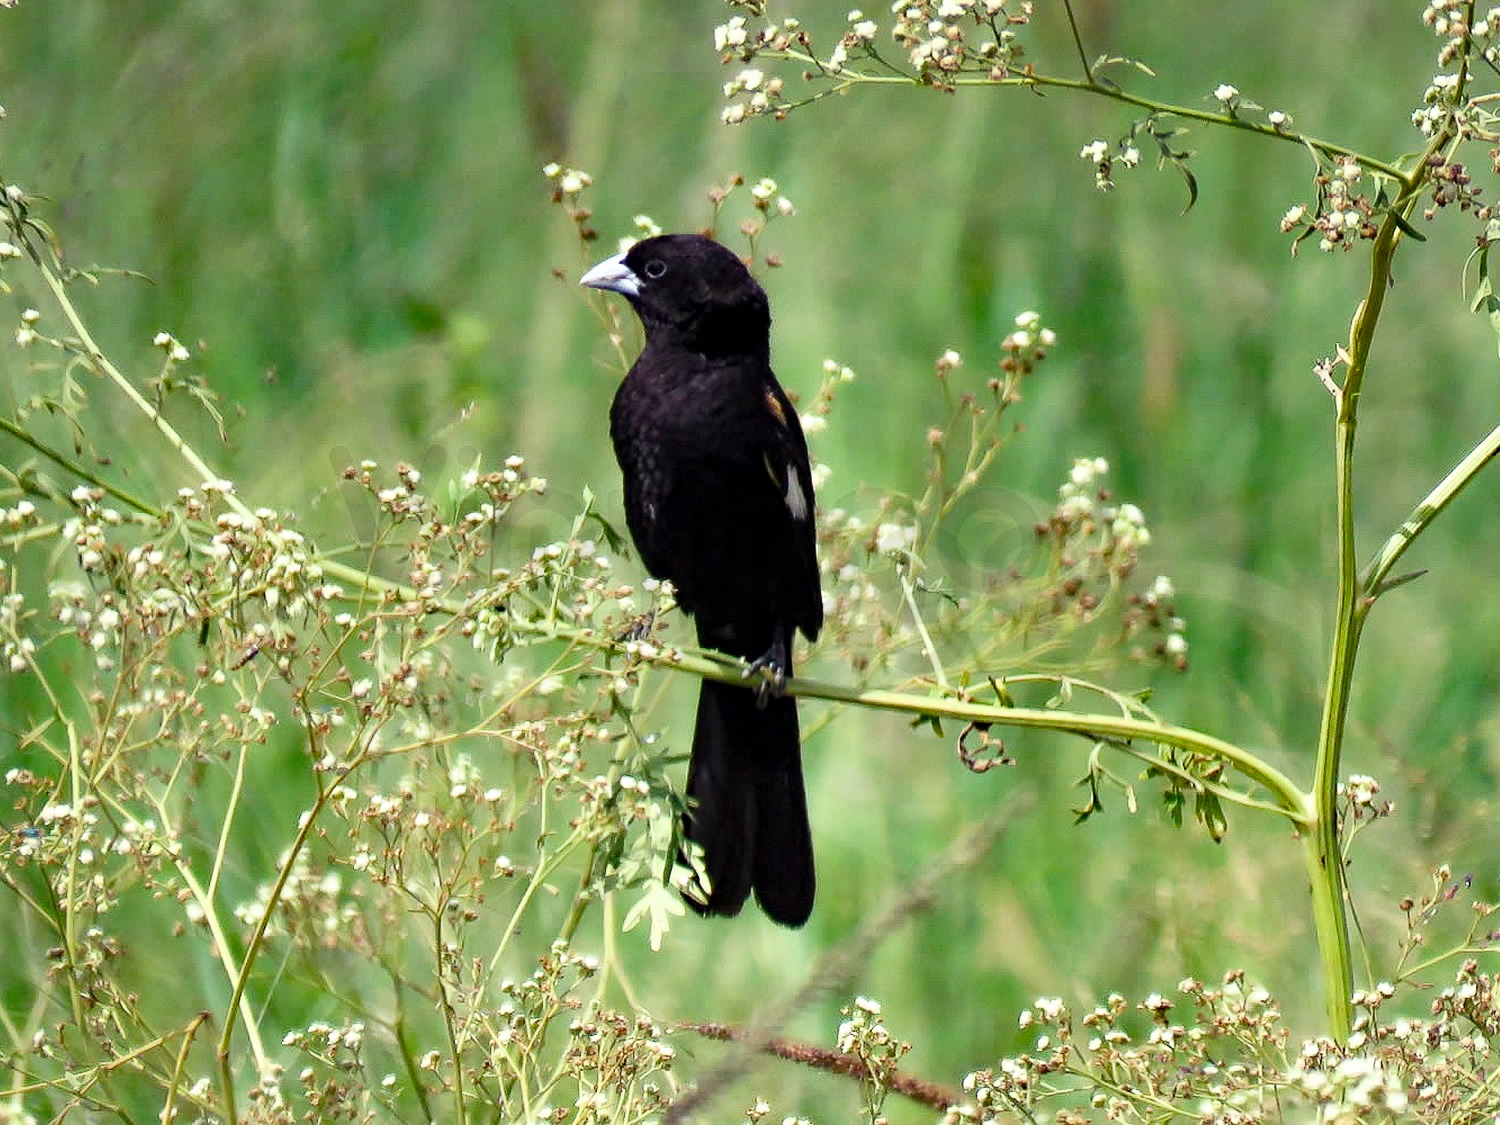 Fan-tailed Widow Bird